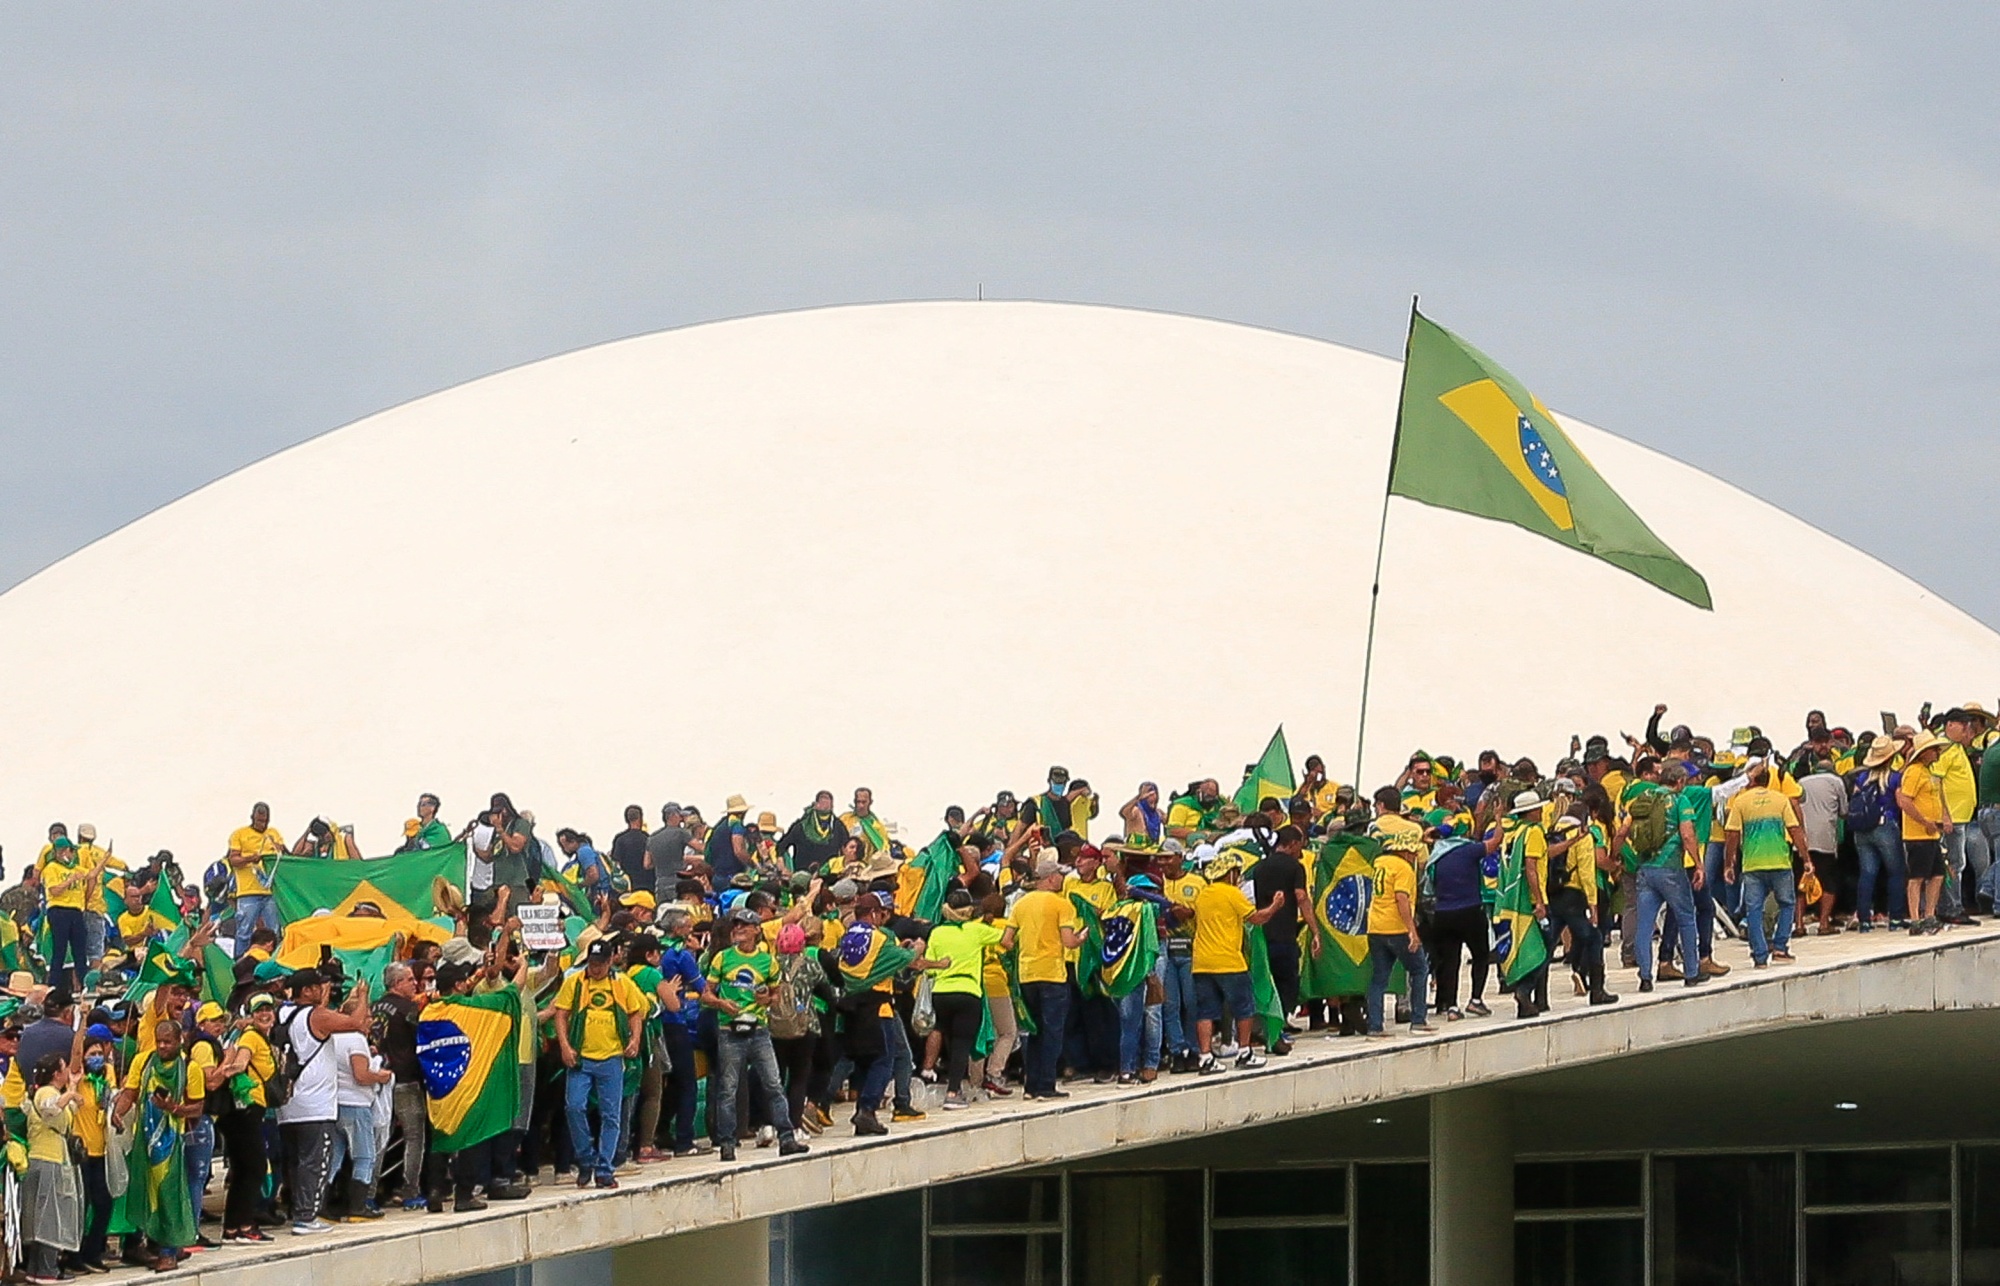 In Brasília, Modernist Architecture Met Political Violence - Bloomberg